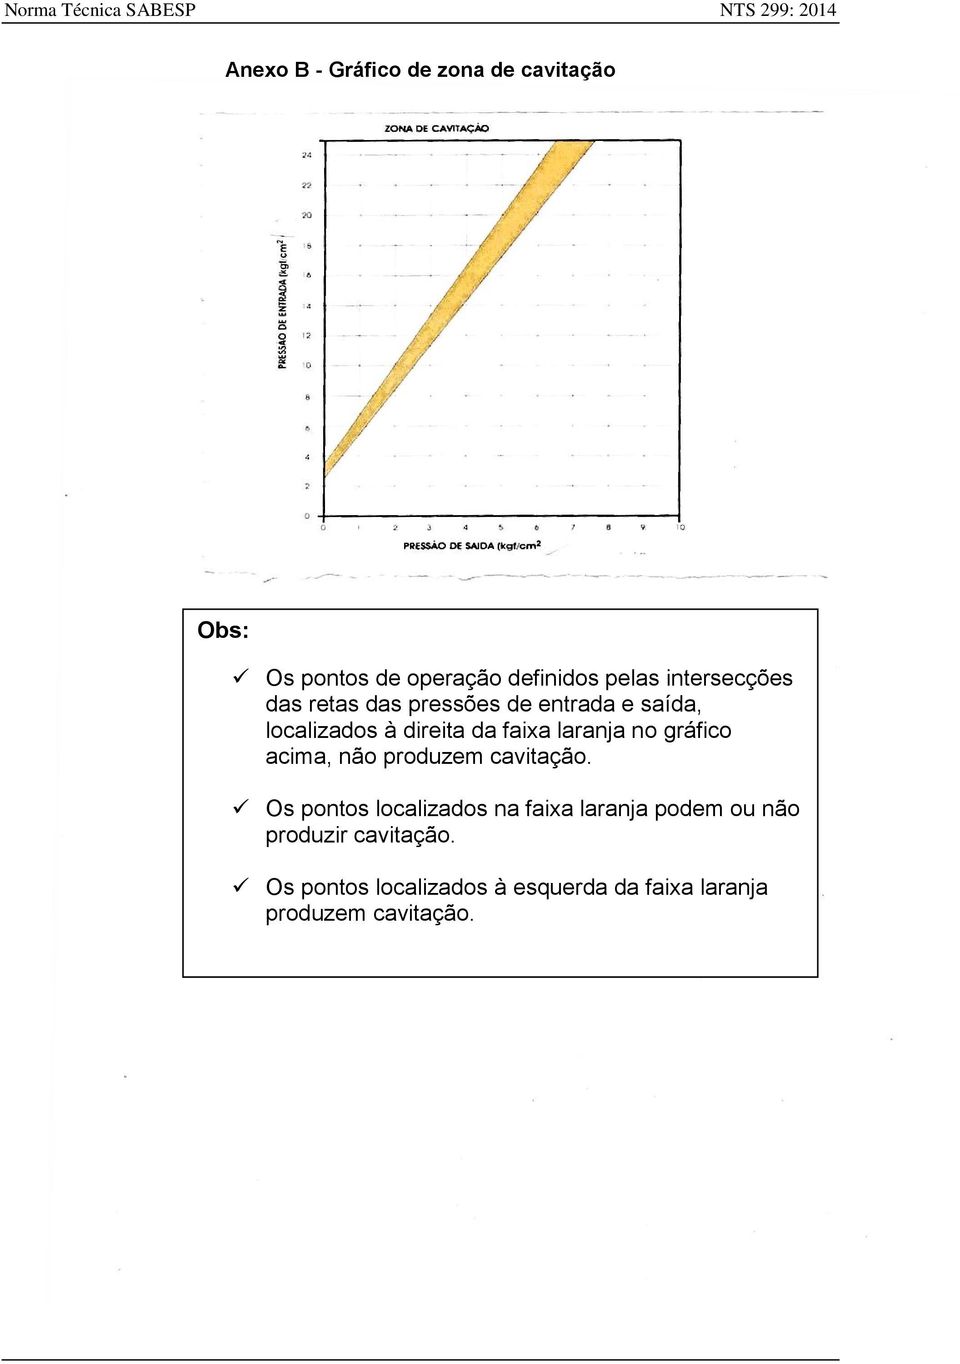 Pressões de entrada ou saída situadas no gráfico à direita da faixa laranja indicam a não ocorrência de cavitação.